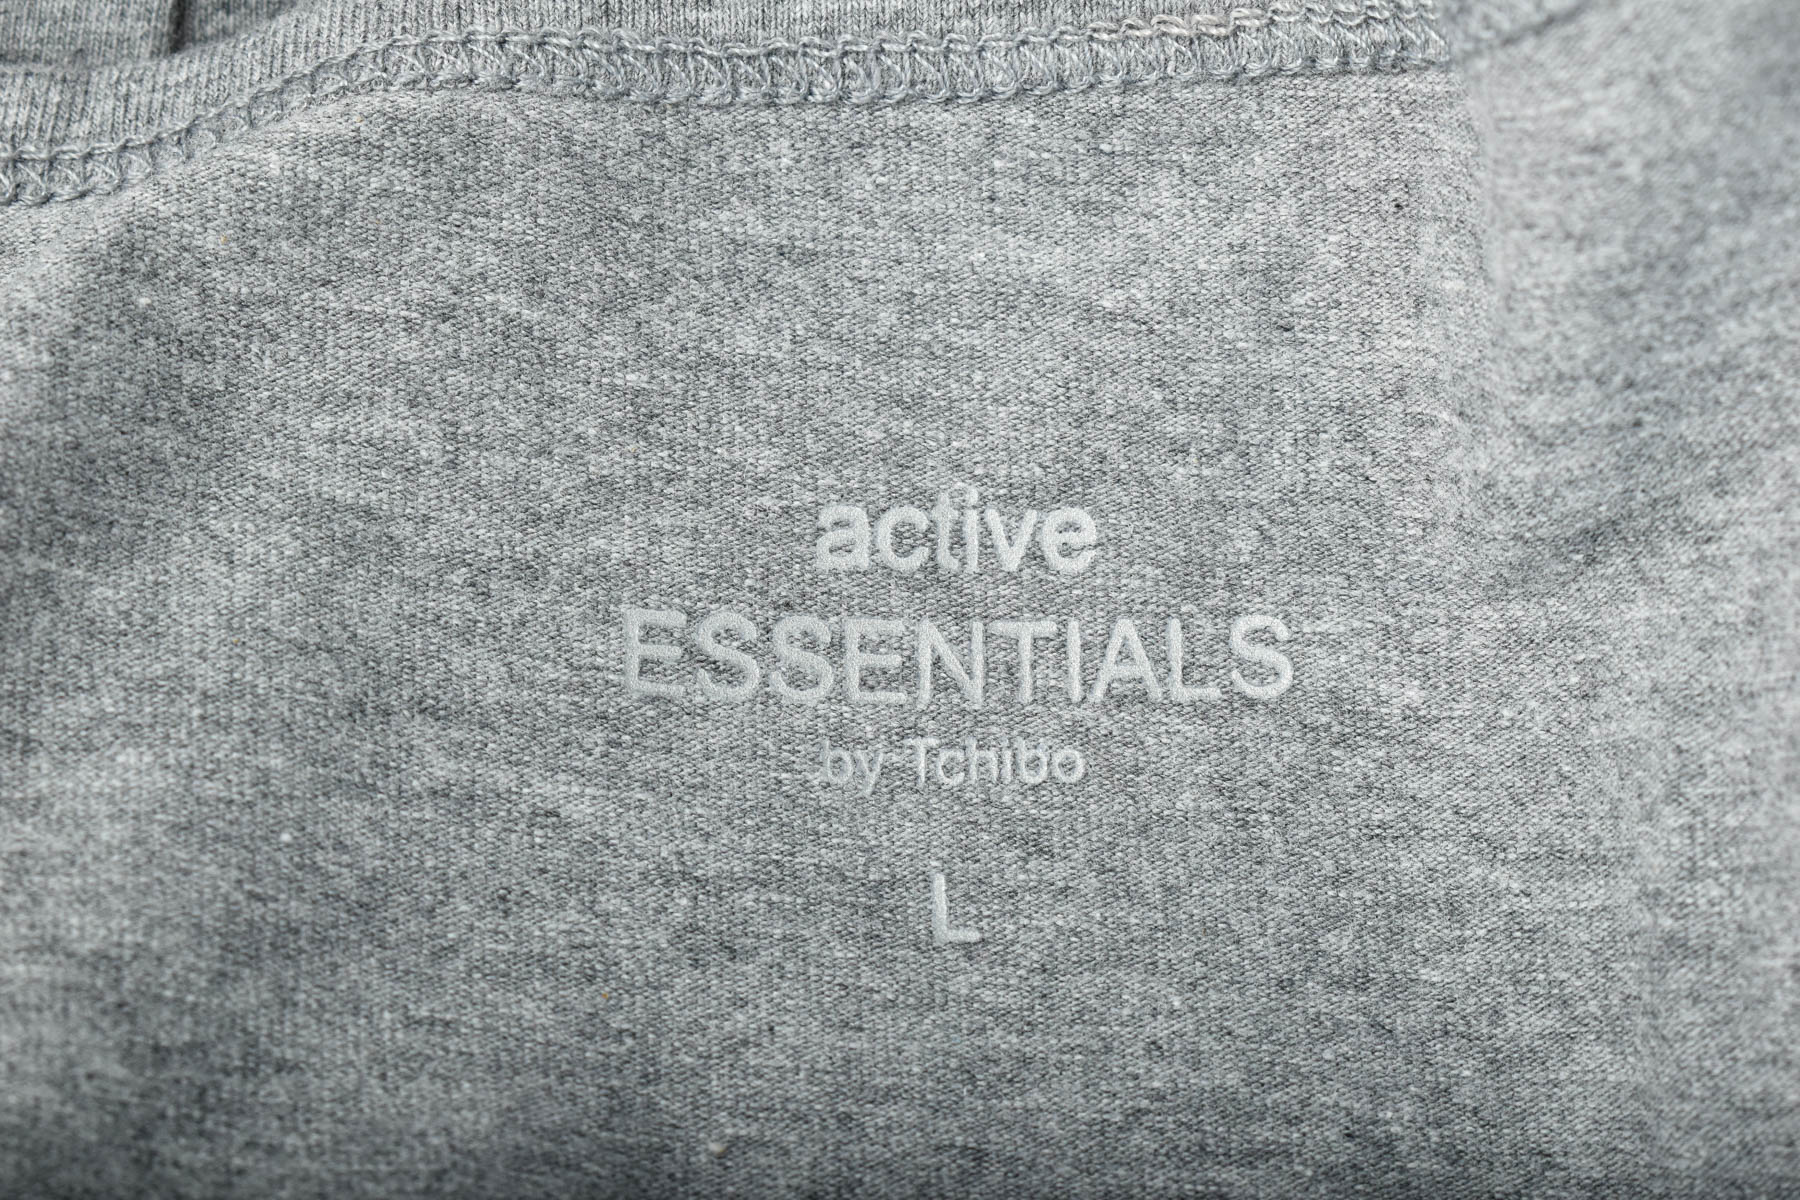 Γυνεκείο τοπ - Active Essentials by Tchibo - 2